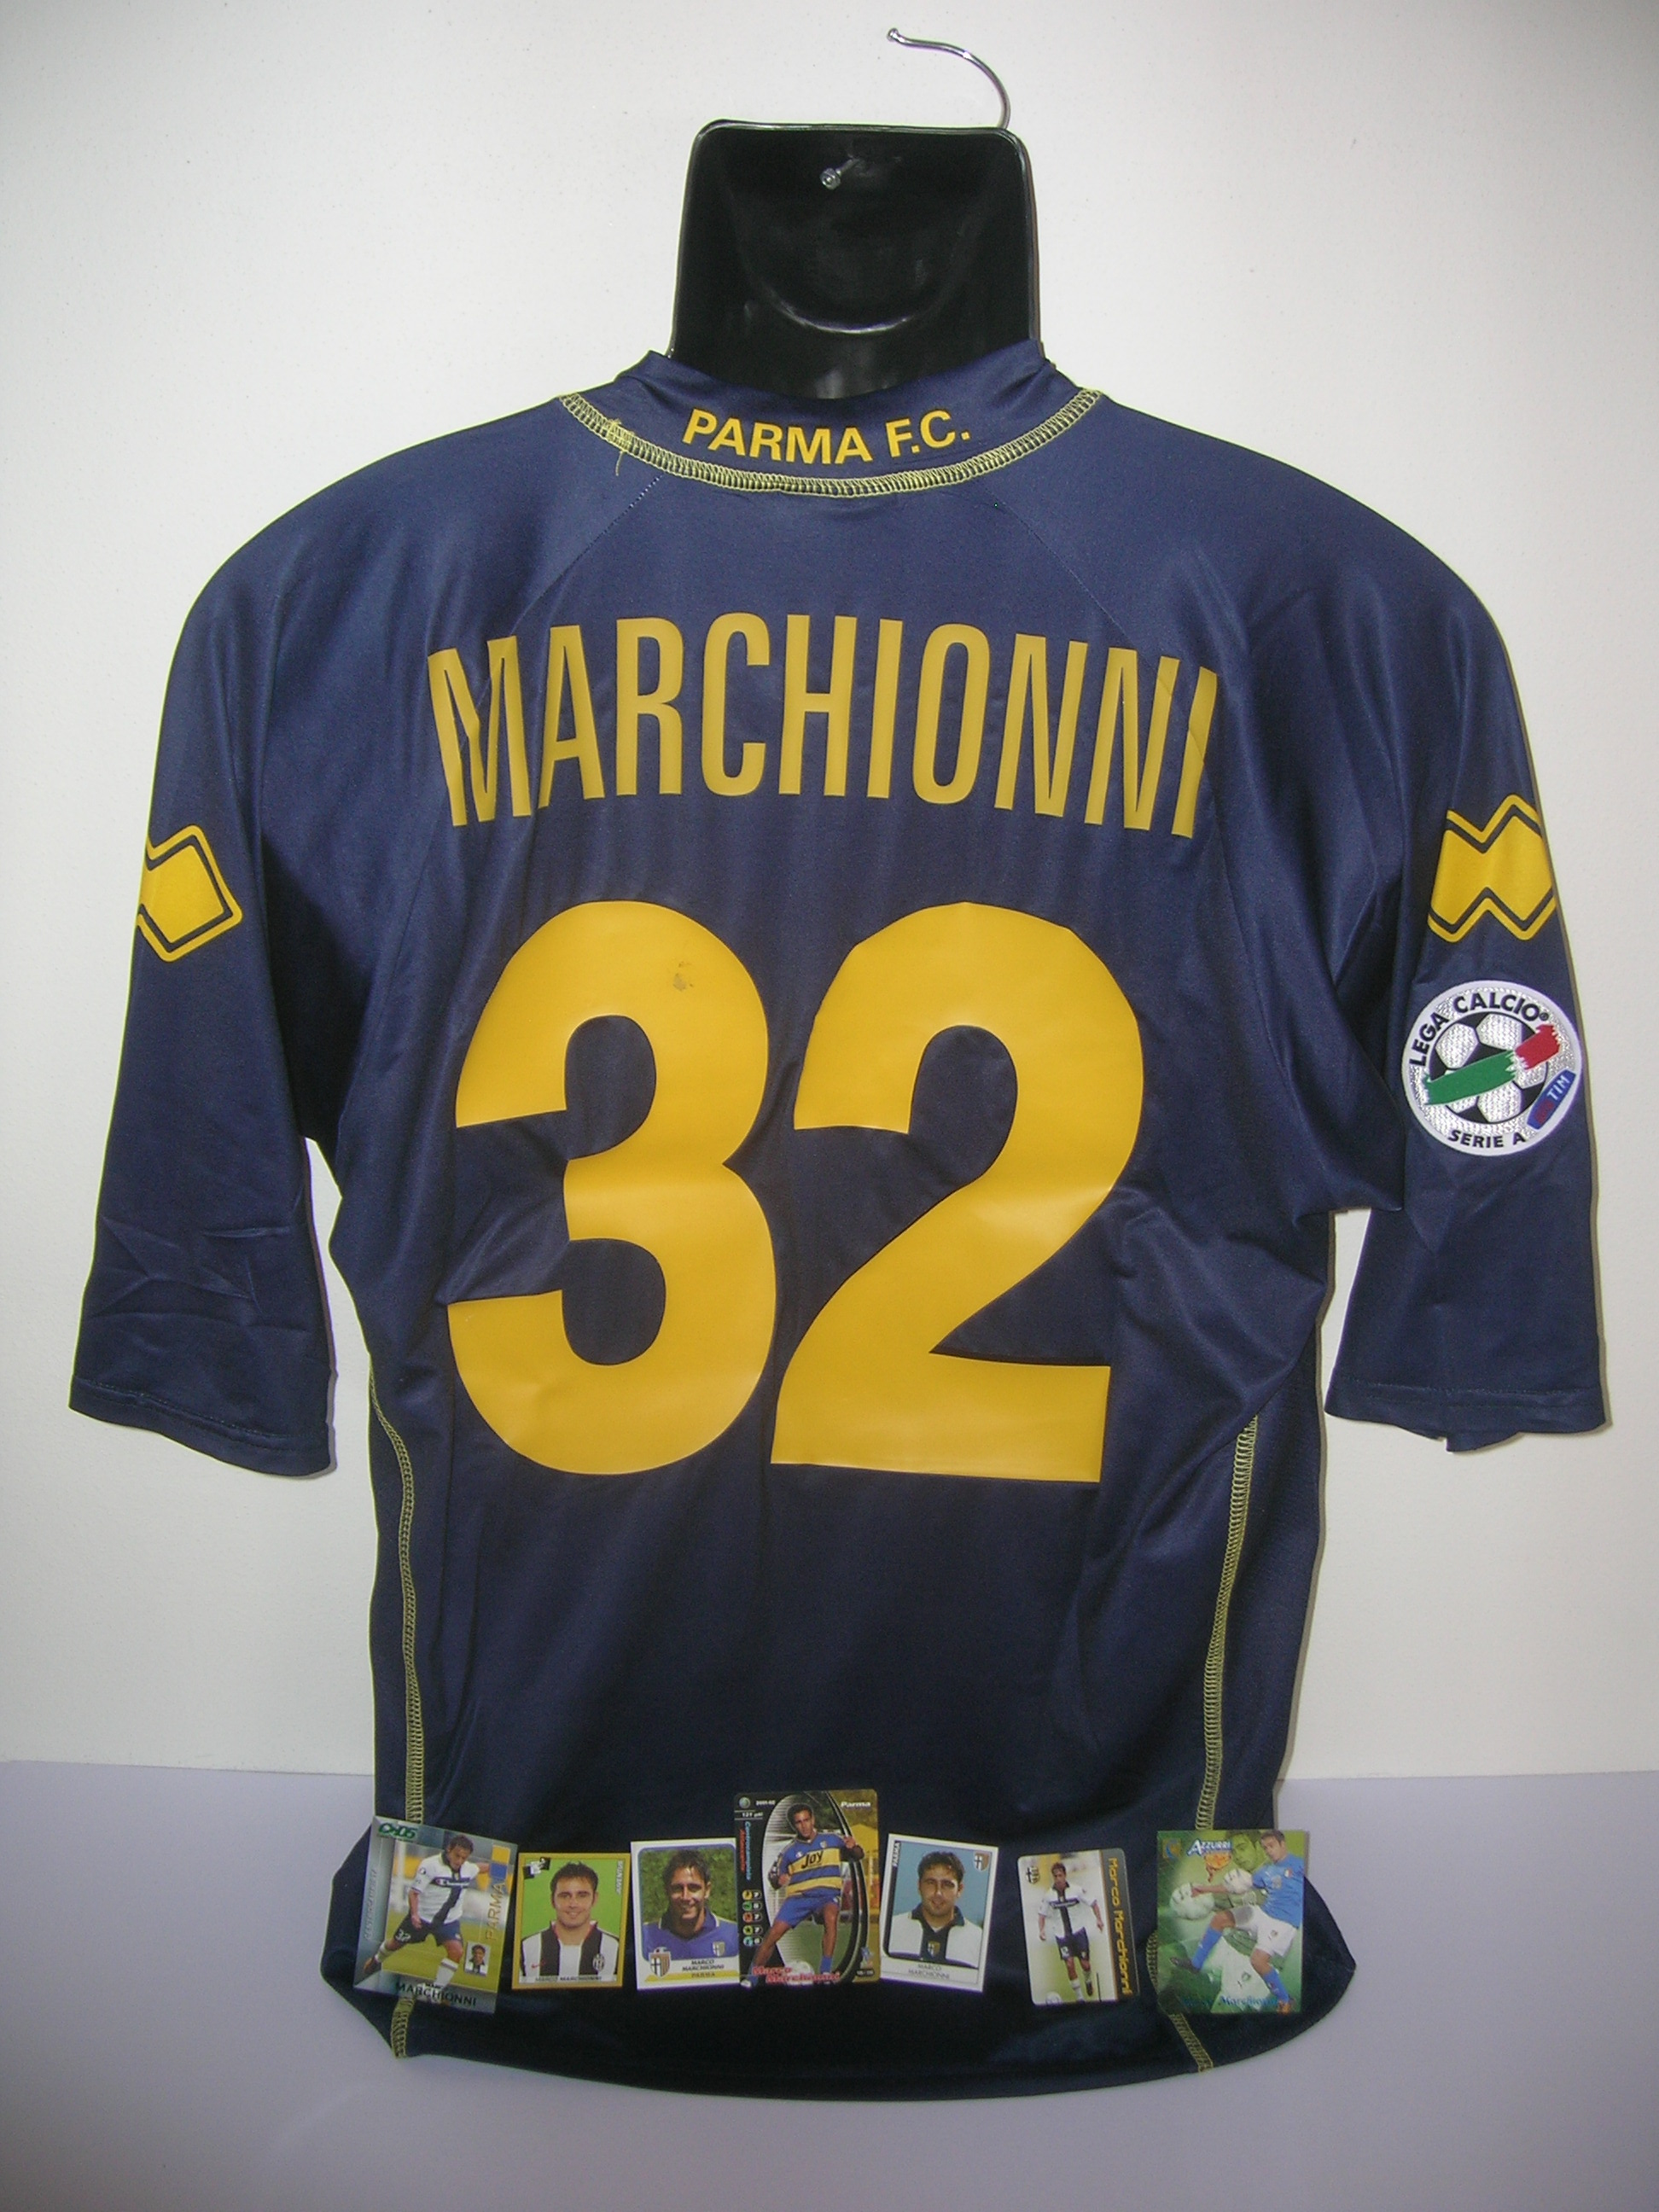 Parma  Marchionni  32  A-2